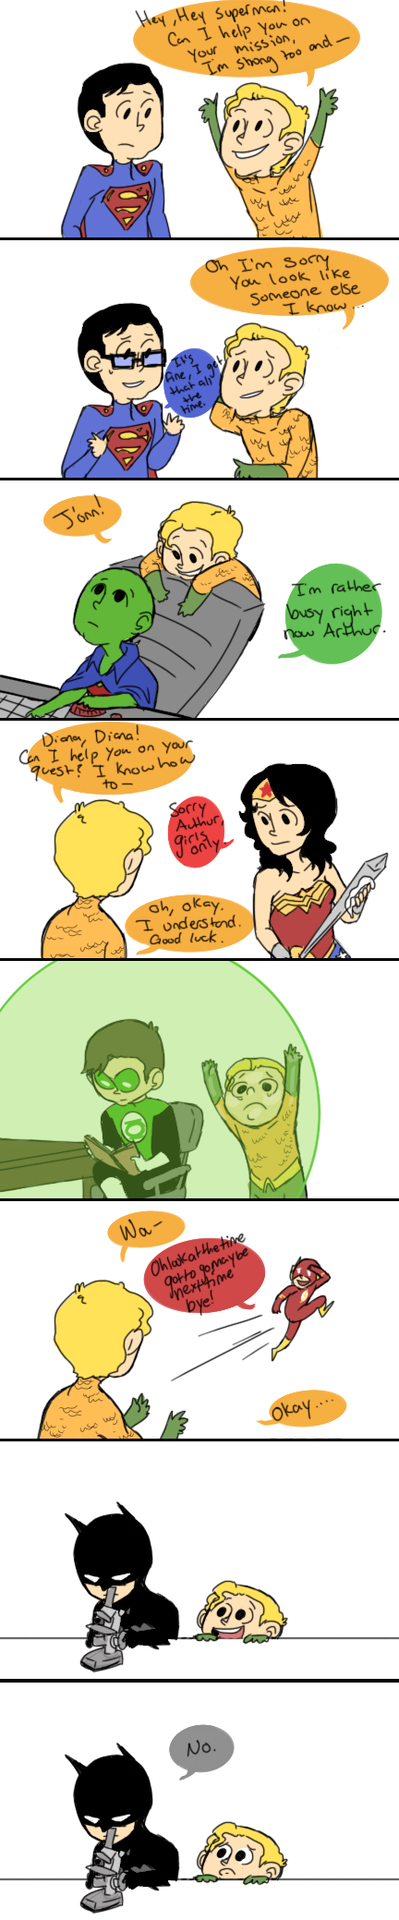 Poor Aquaman....